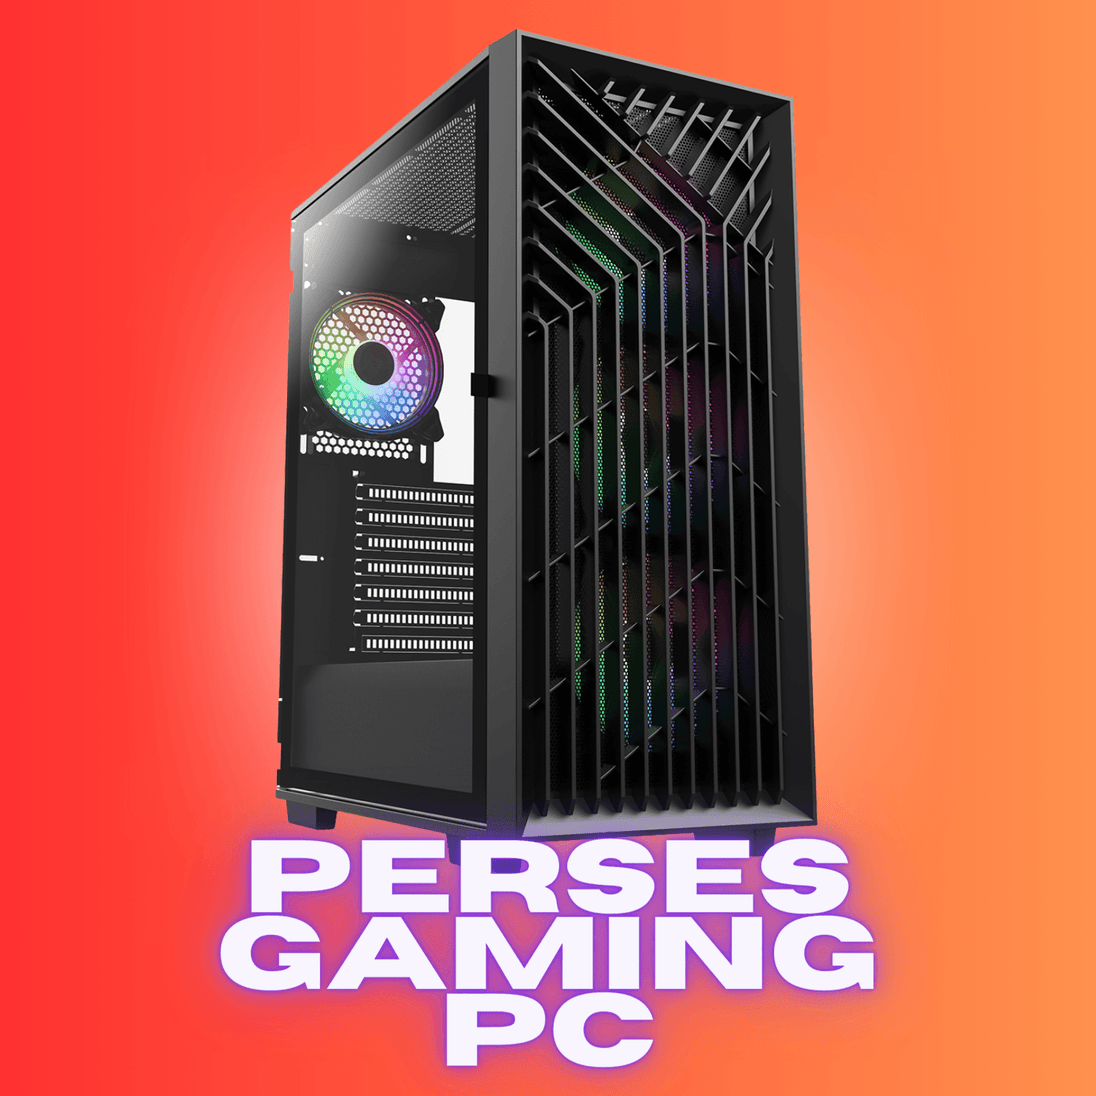 Perses RGB PC Intel Core i5-4440 8GB 256GB SSD + 1TB HDD WIN10 HOME